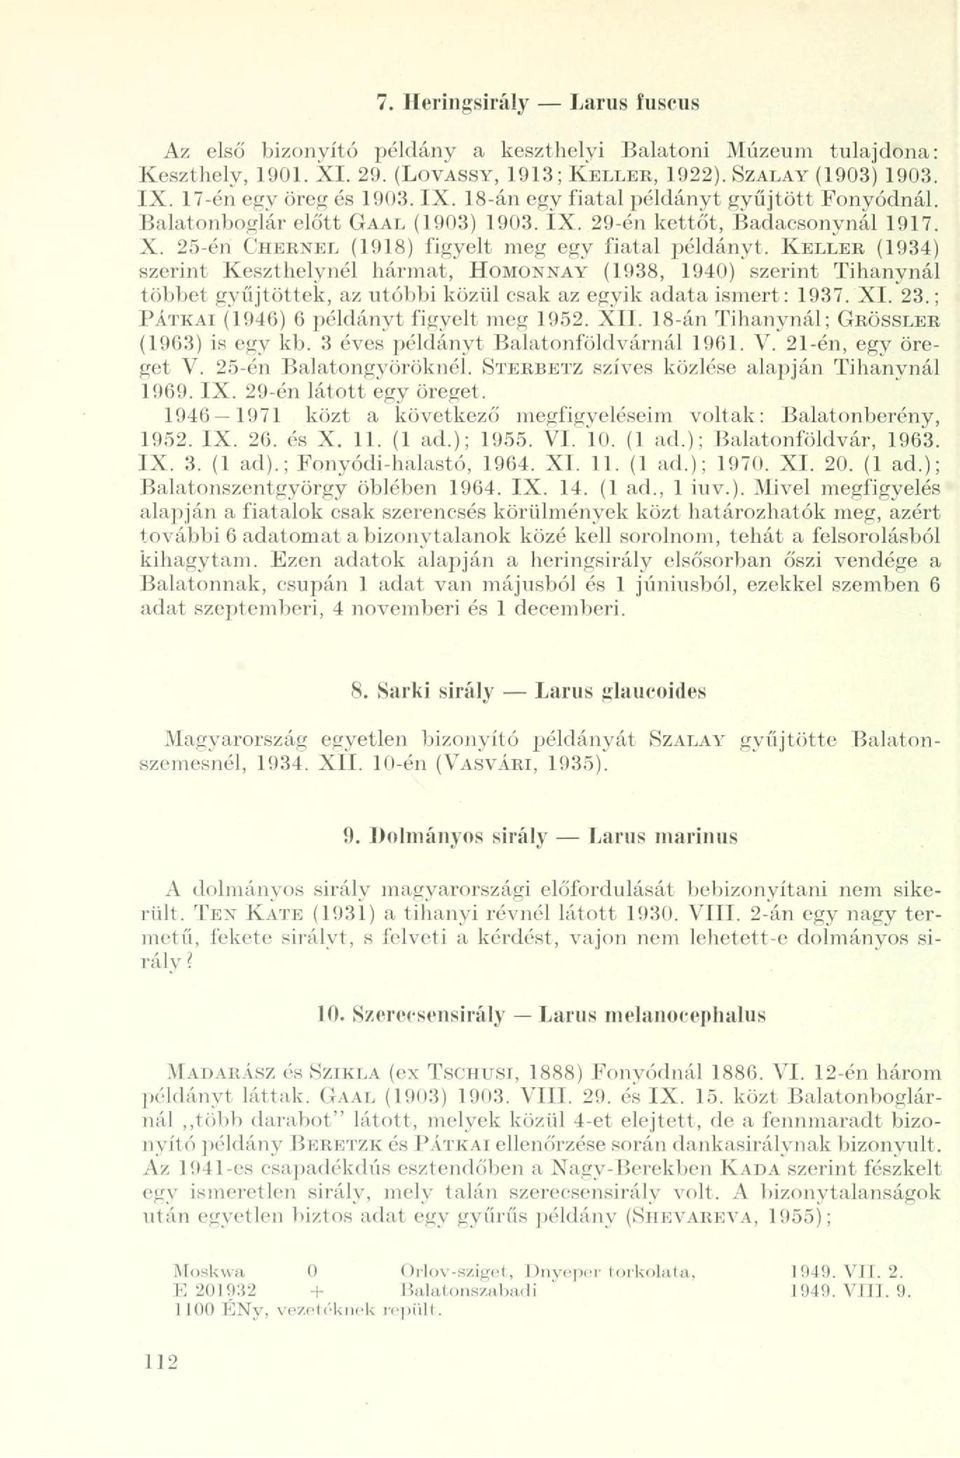 KELLER (1934) szerint Keszthelynél hármat, HOMONNAY (1938, 1940) szerint Tihanynál többet gyűjtöttek, az utóbbi közül csak az egyik adata ismert: 1937. XI. 23.